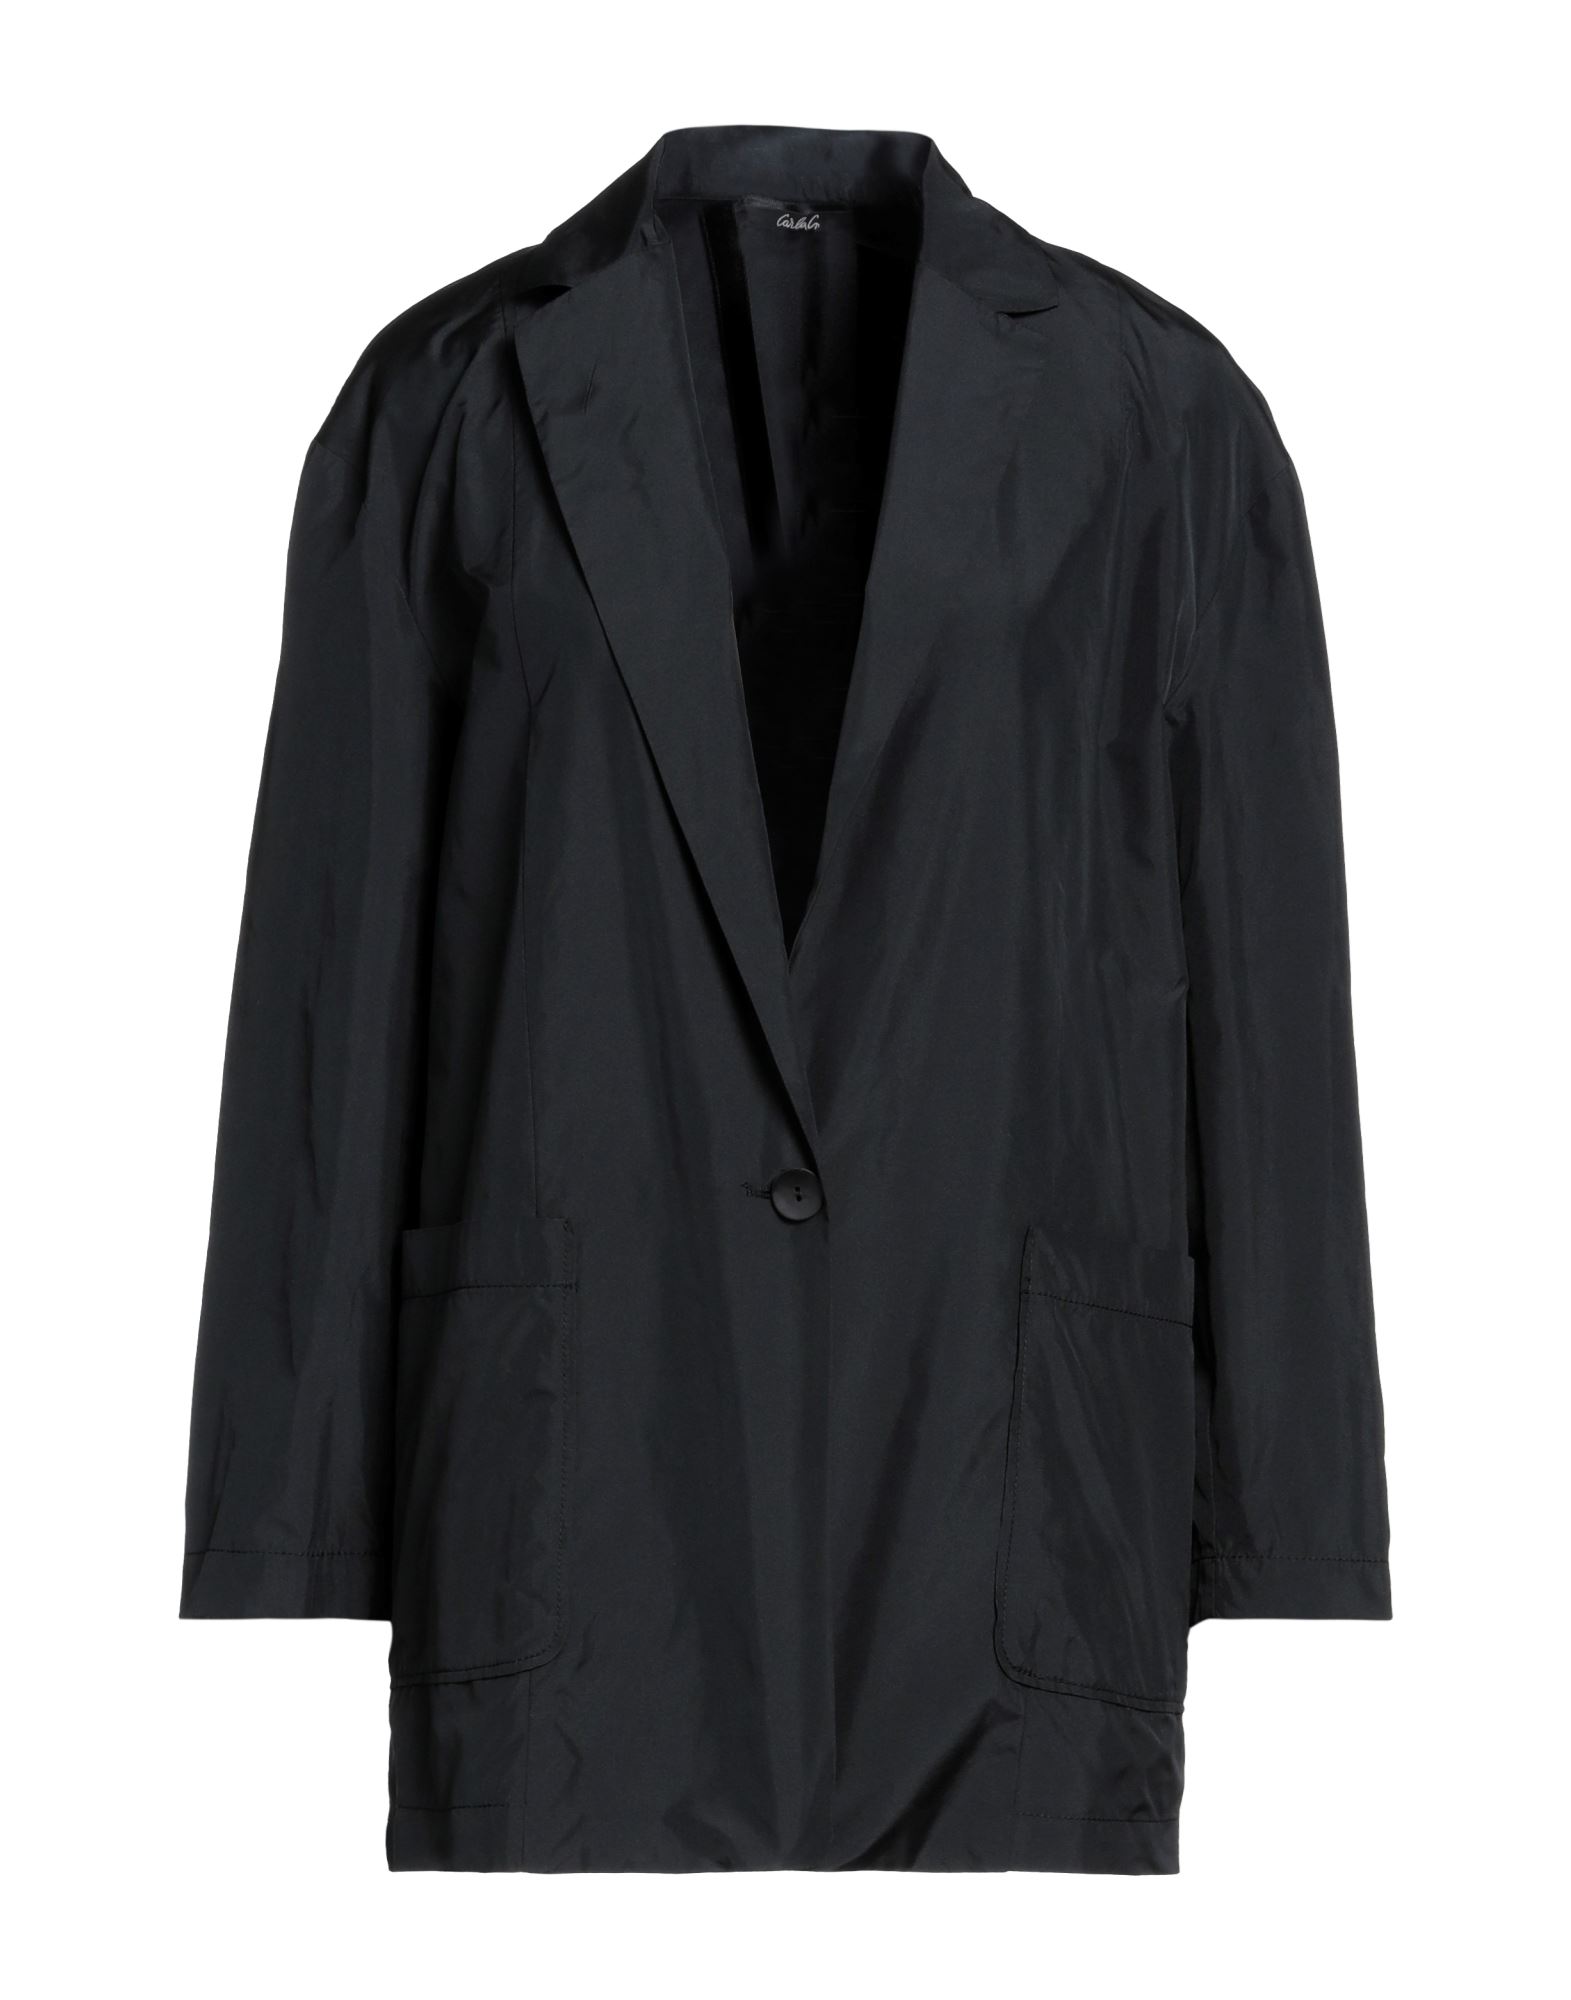 Carla G. Suit Jackets In Black